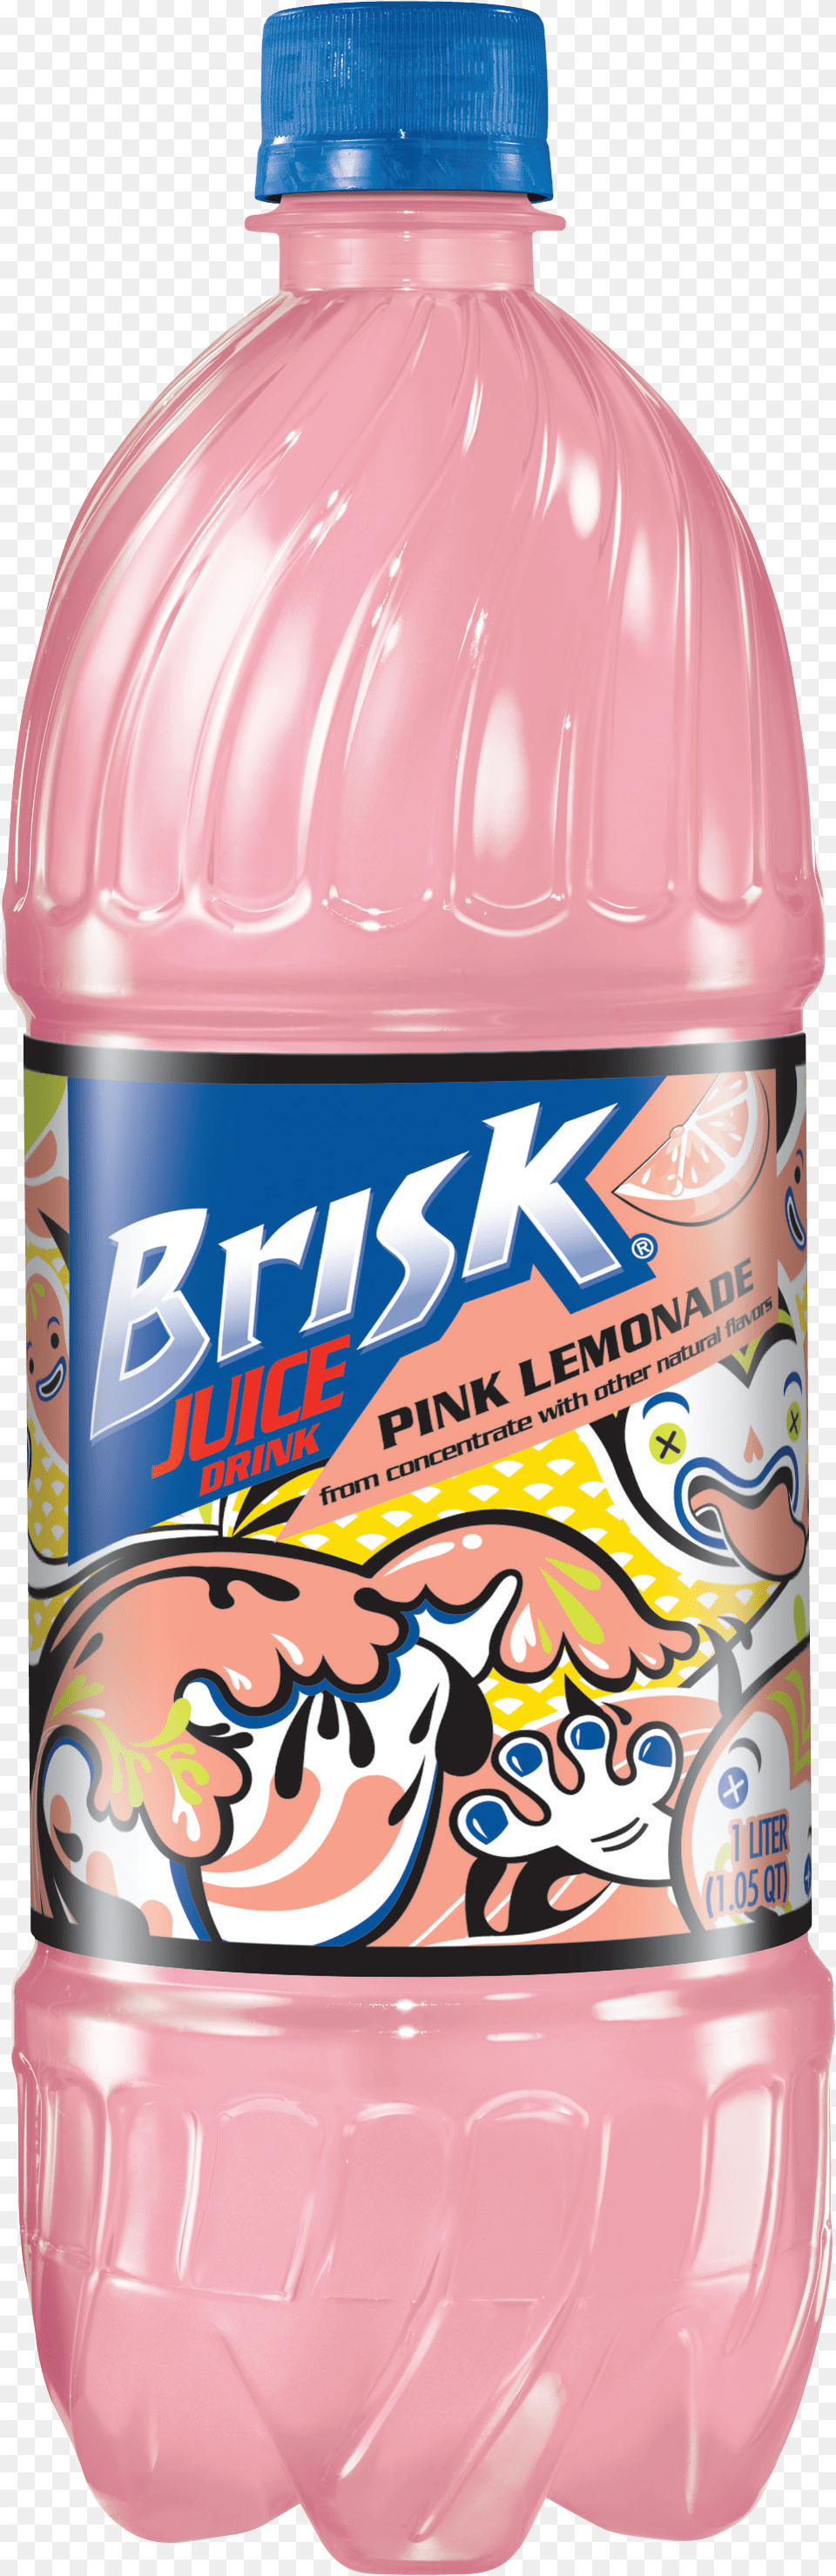 Brisk Pink Lemonade, Bottle, Shaker, Beverage Free Png